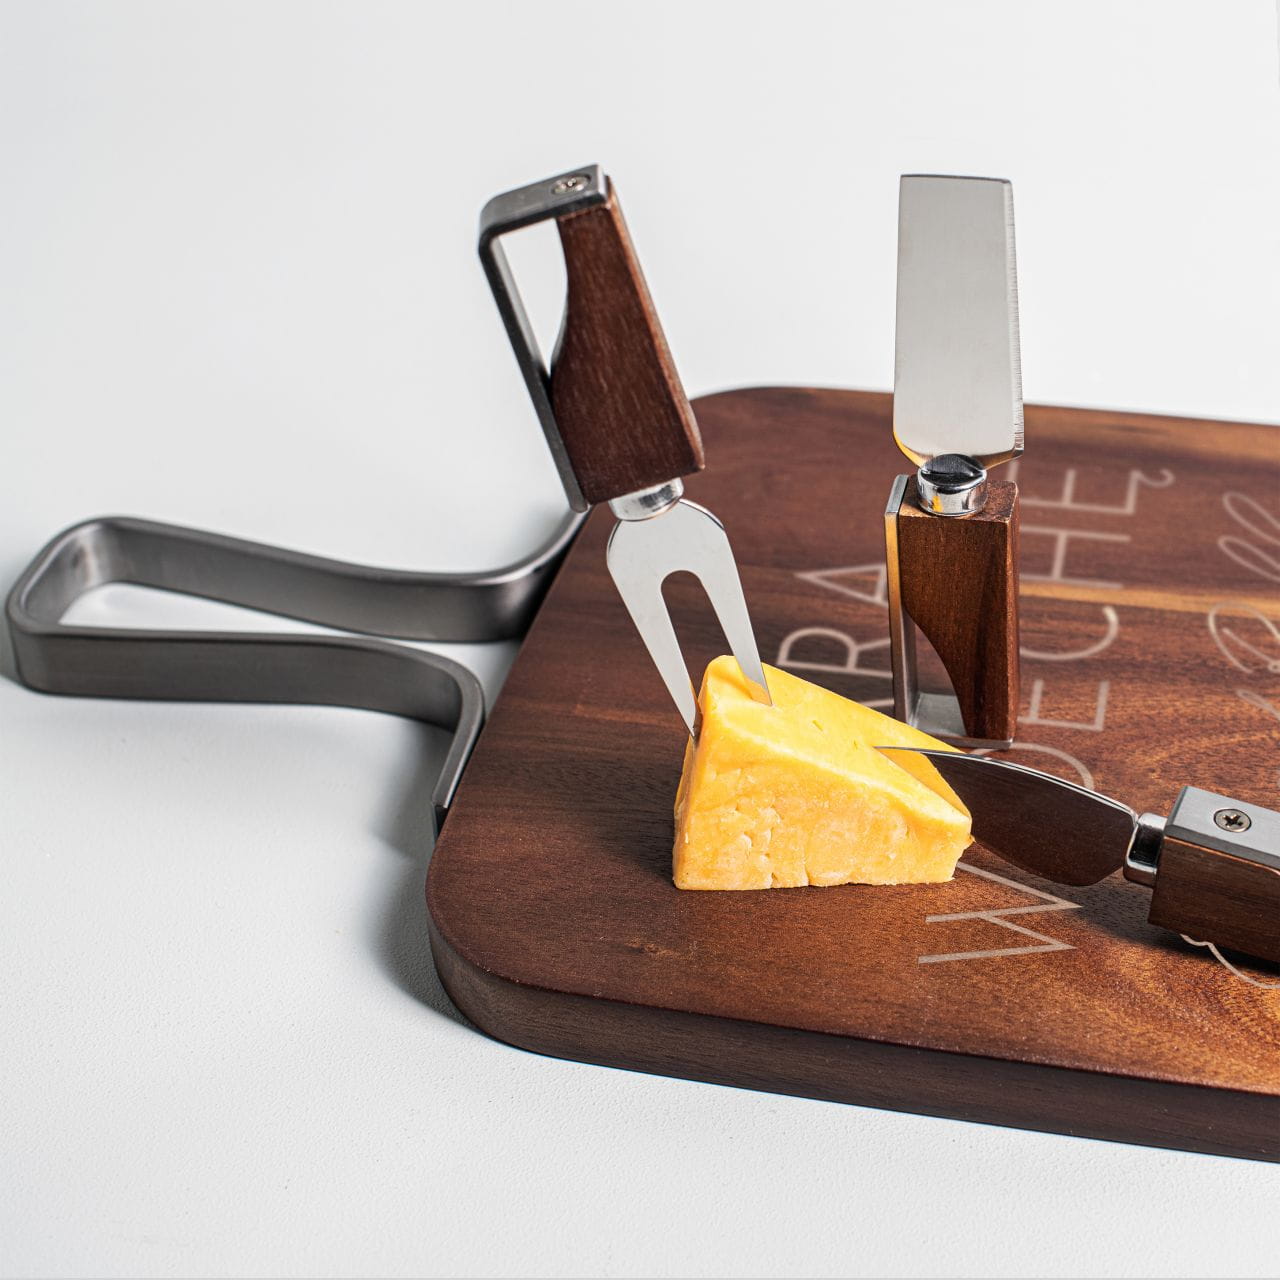 Deska do serwowania serów z nożami to drewniany prezent dla zakochanej